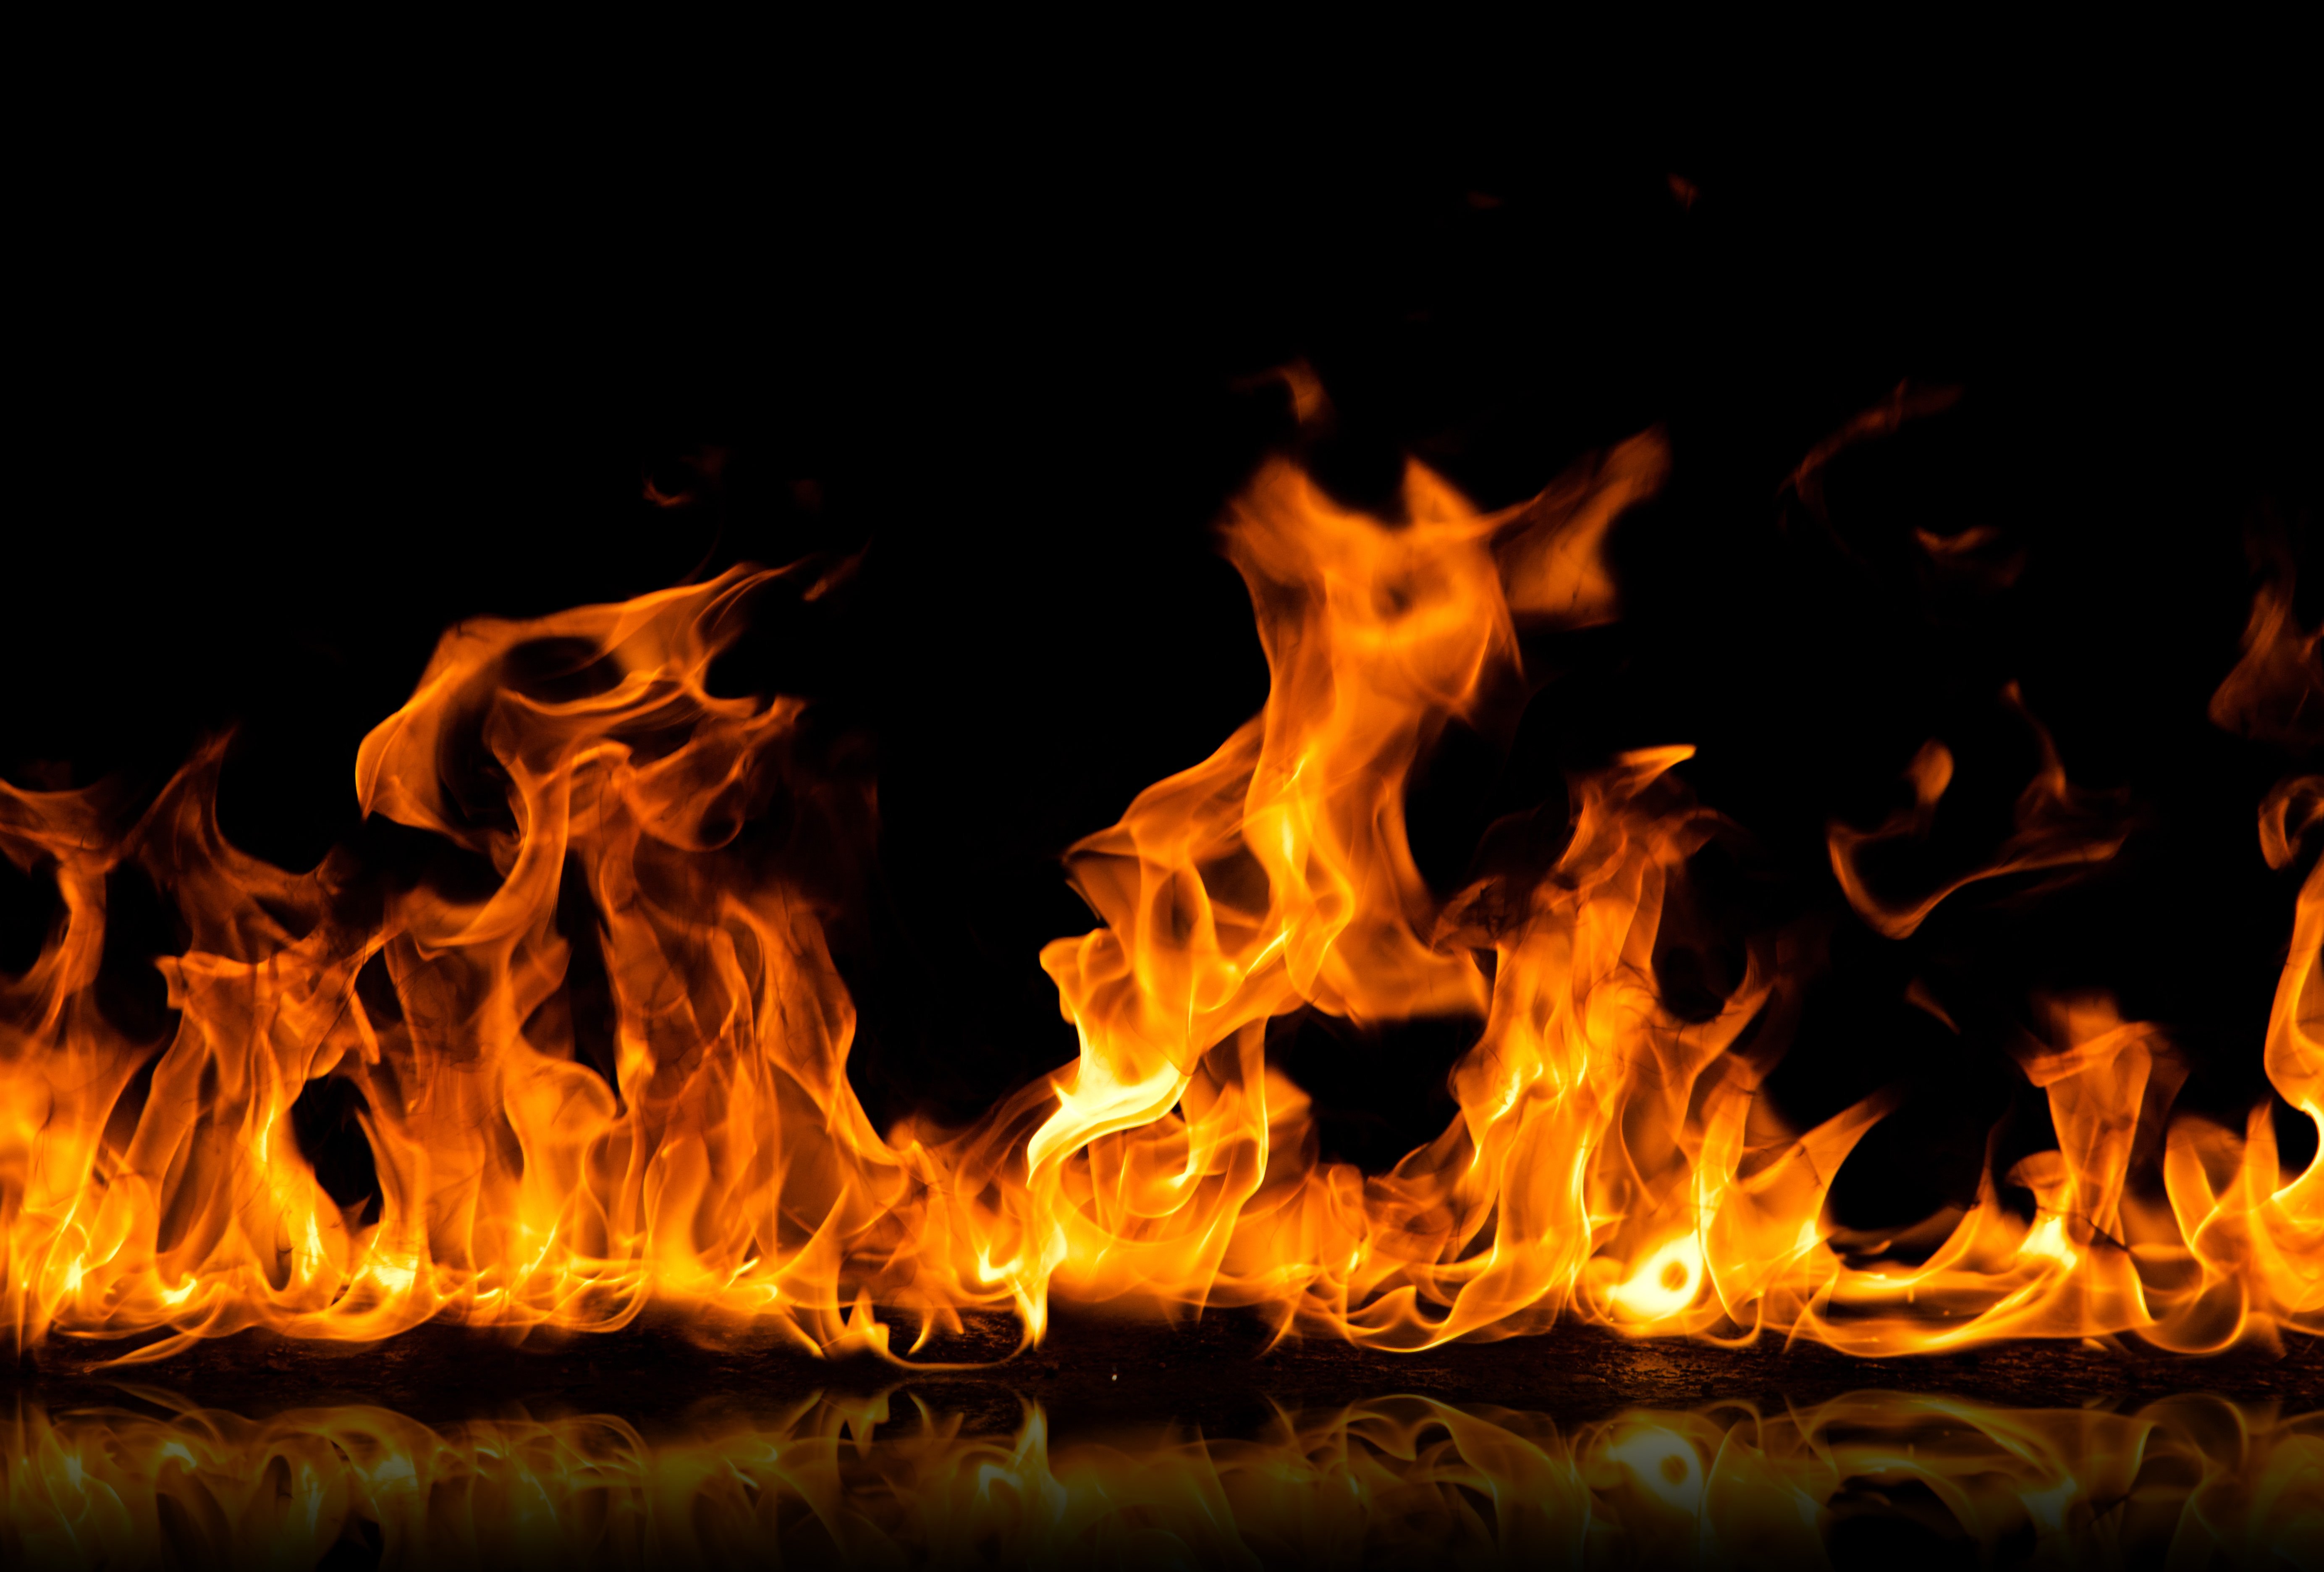 fire wallpaper hd,fire,flame,heat,event,gas